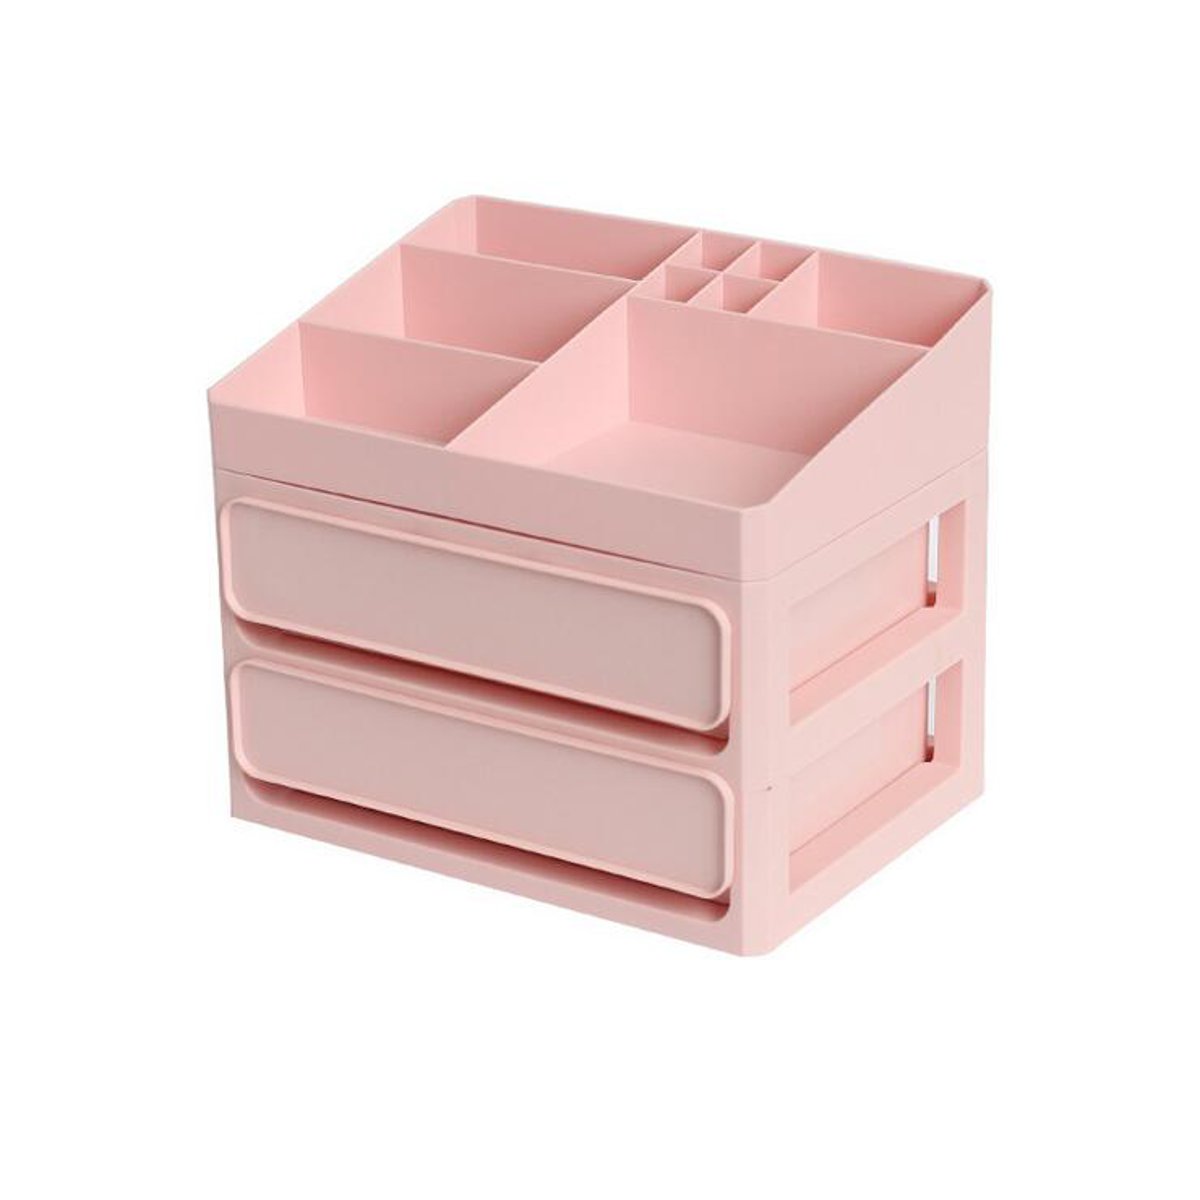 

2/3 Layers Storage Box PP Table Tidy Desktop Organizer Drawer Case Makeup Display Holder